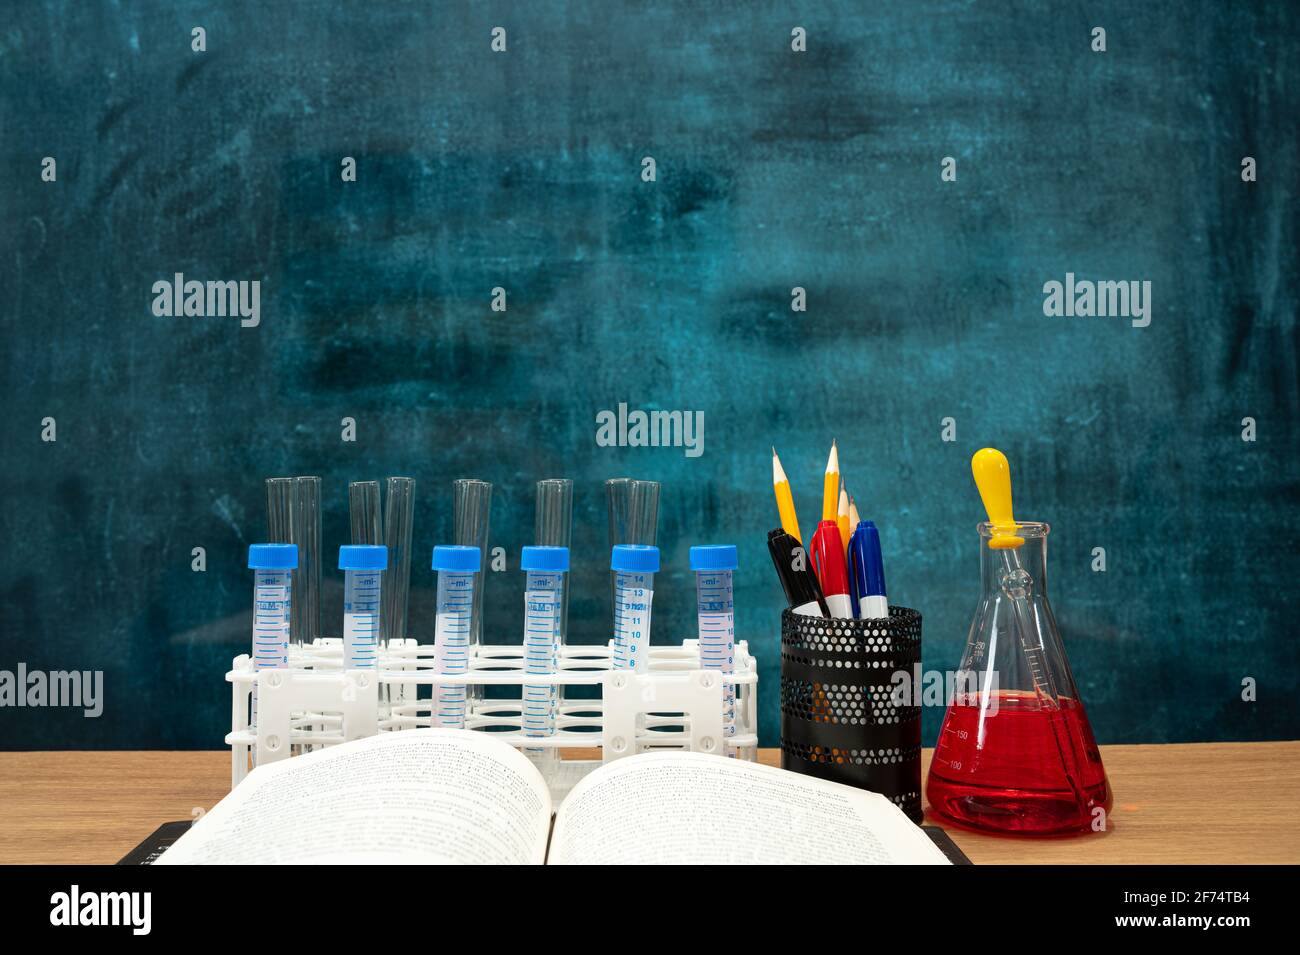 Bücher und wissenschaftliche Experimentwerkzeuge auf dem Schreibtisch. Leere Tafel. Bildungskonzept. Stockfoto